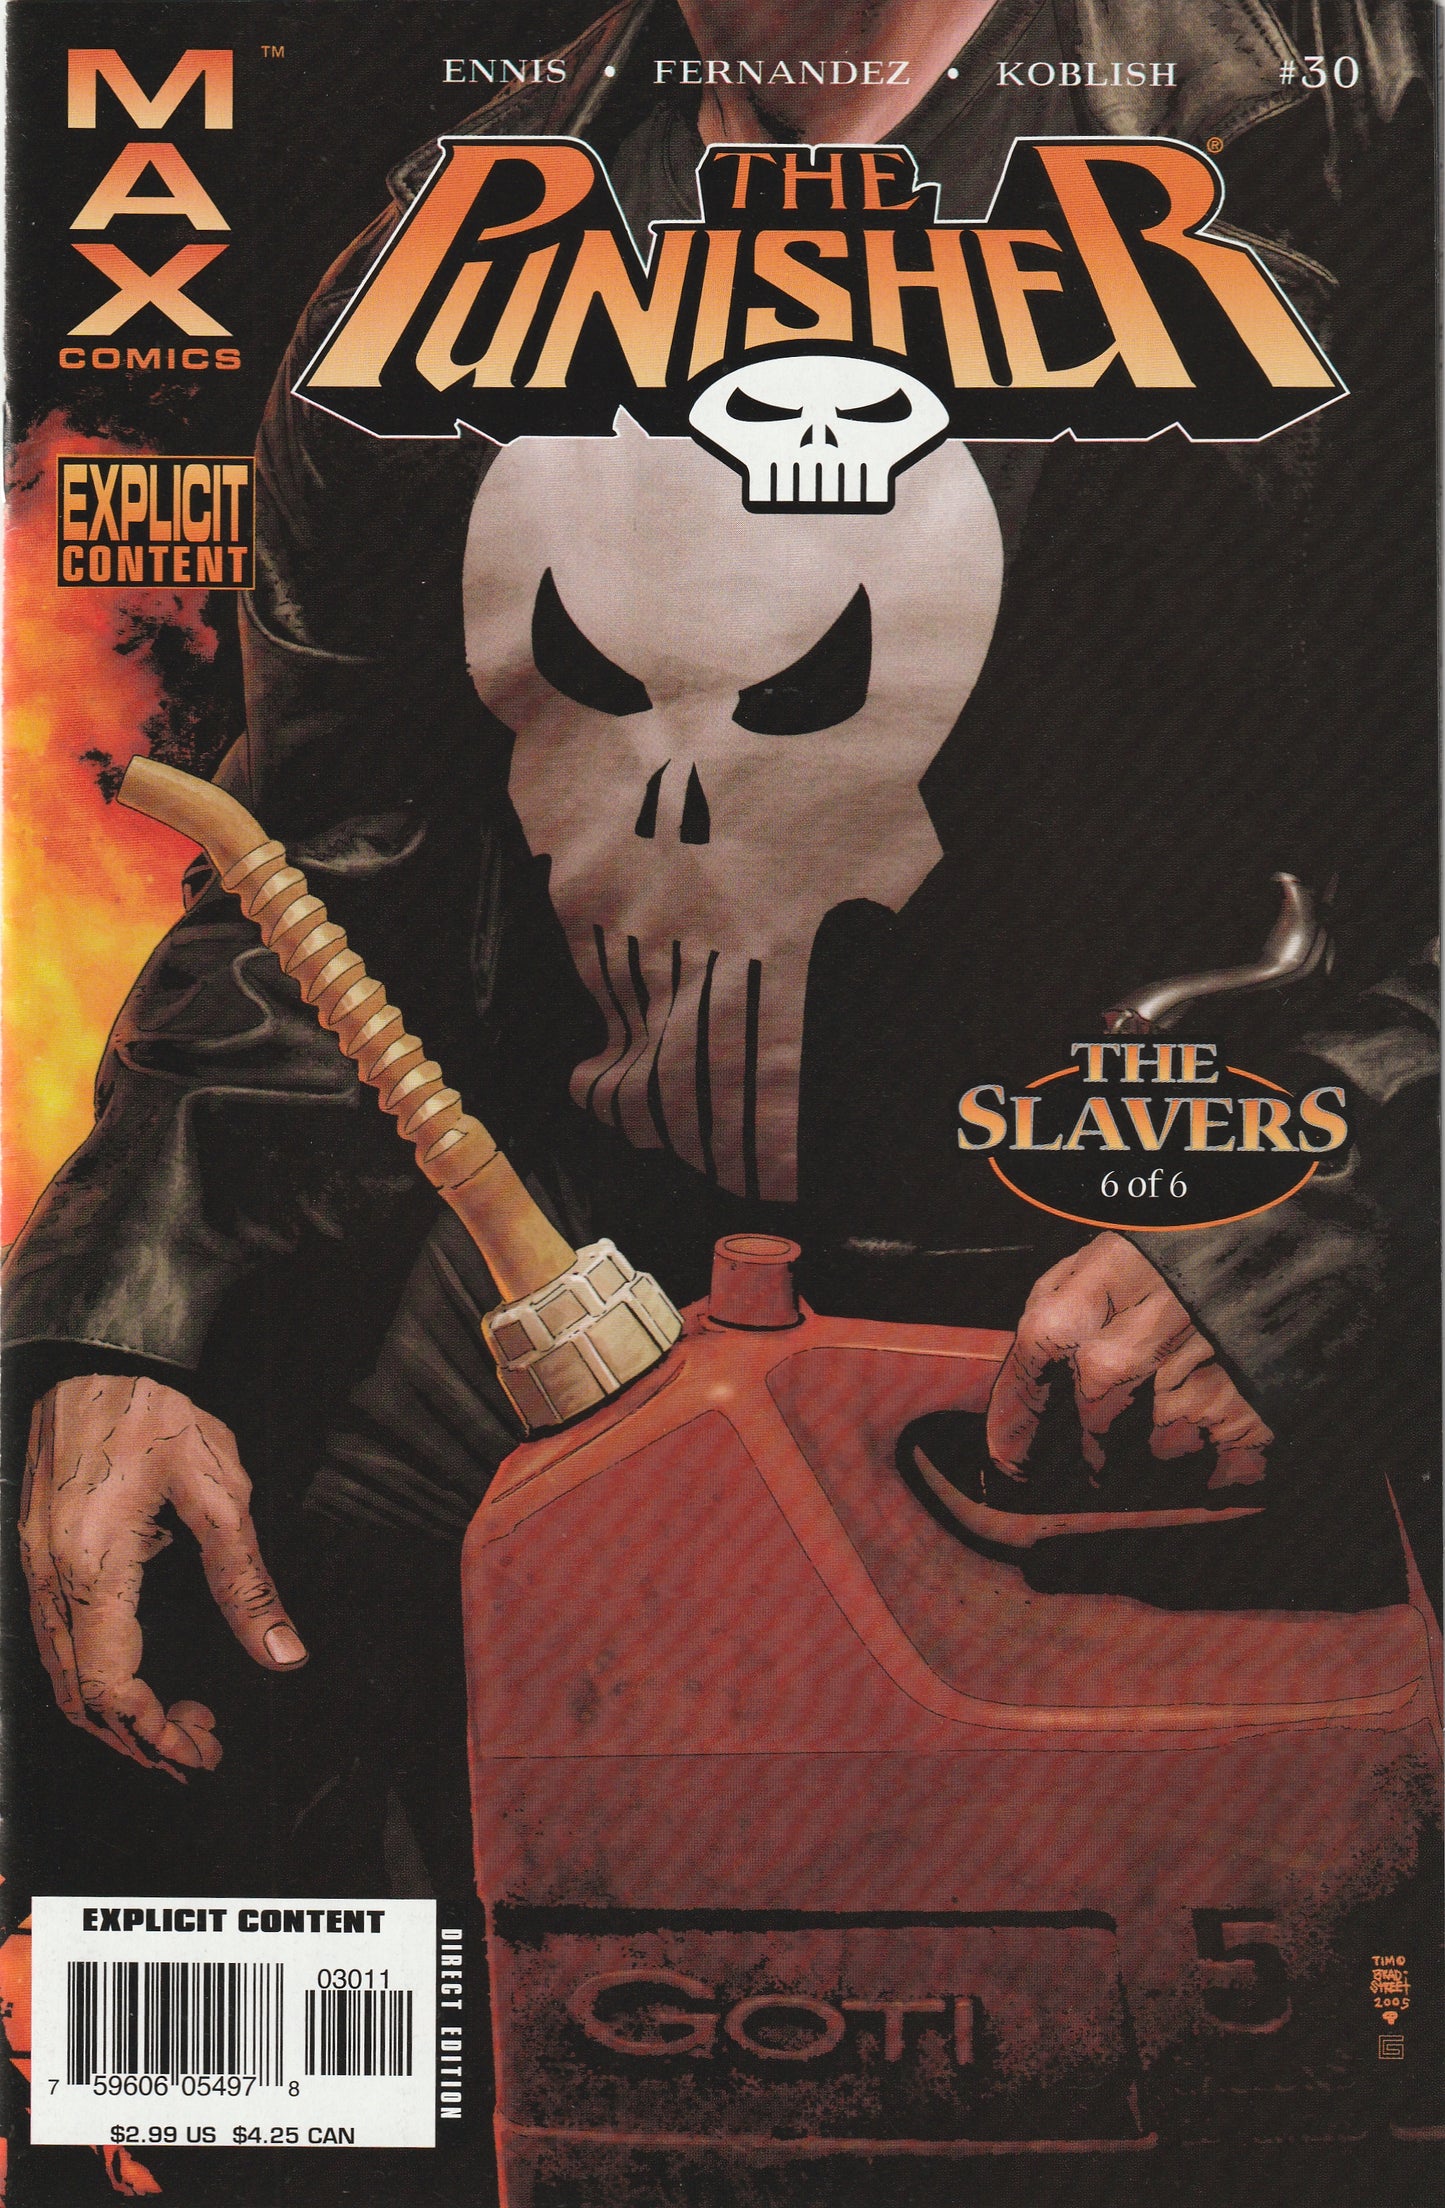 The Punisher #30 (MAX, 2006) - Garth Ennis